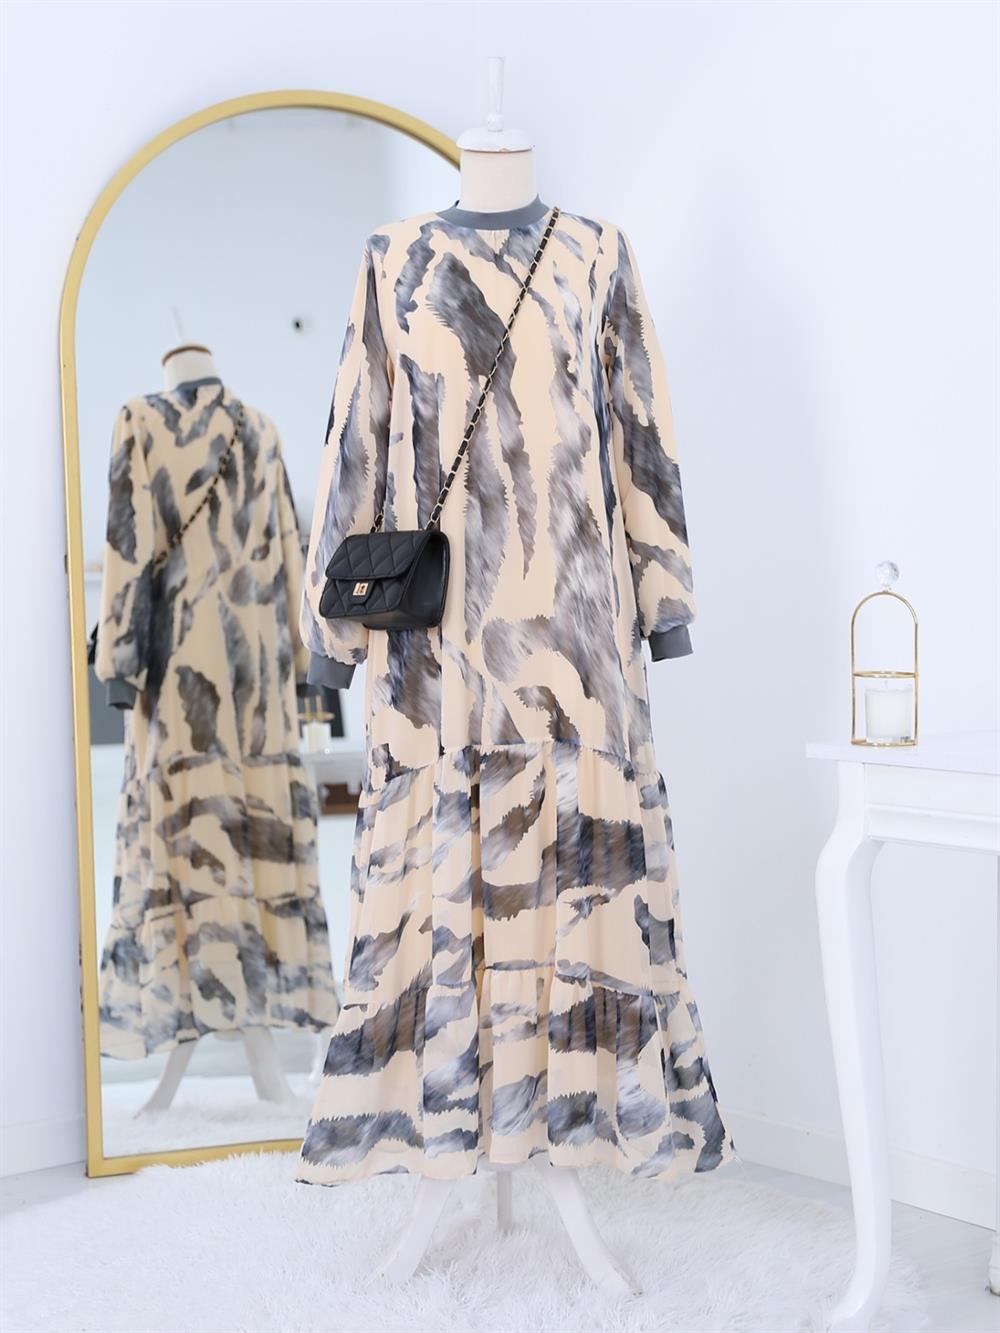 Yakası Ribanalı skirt Katlı Patterned Şifon Dress -Grey